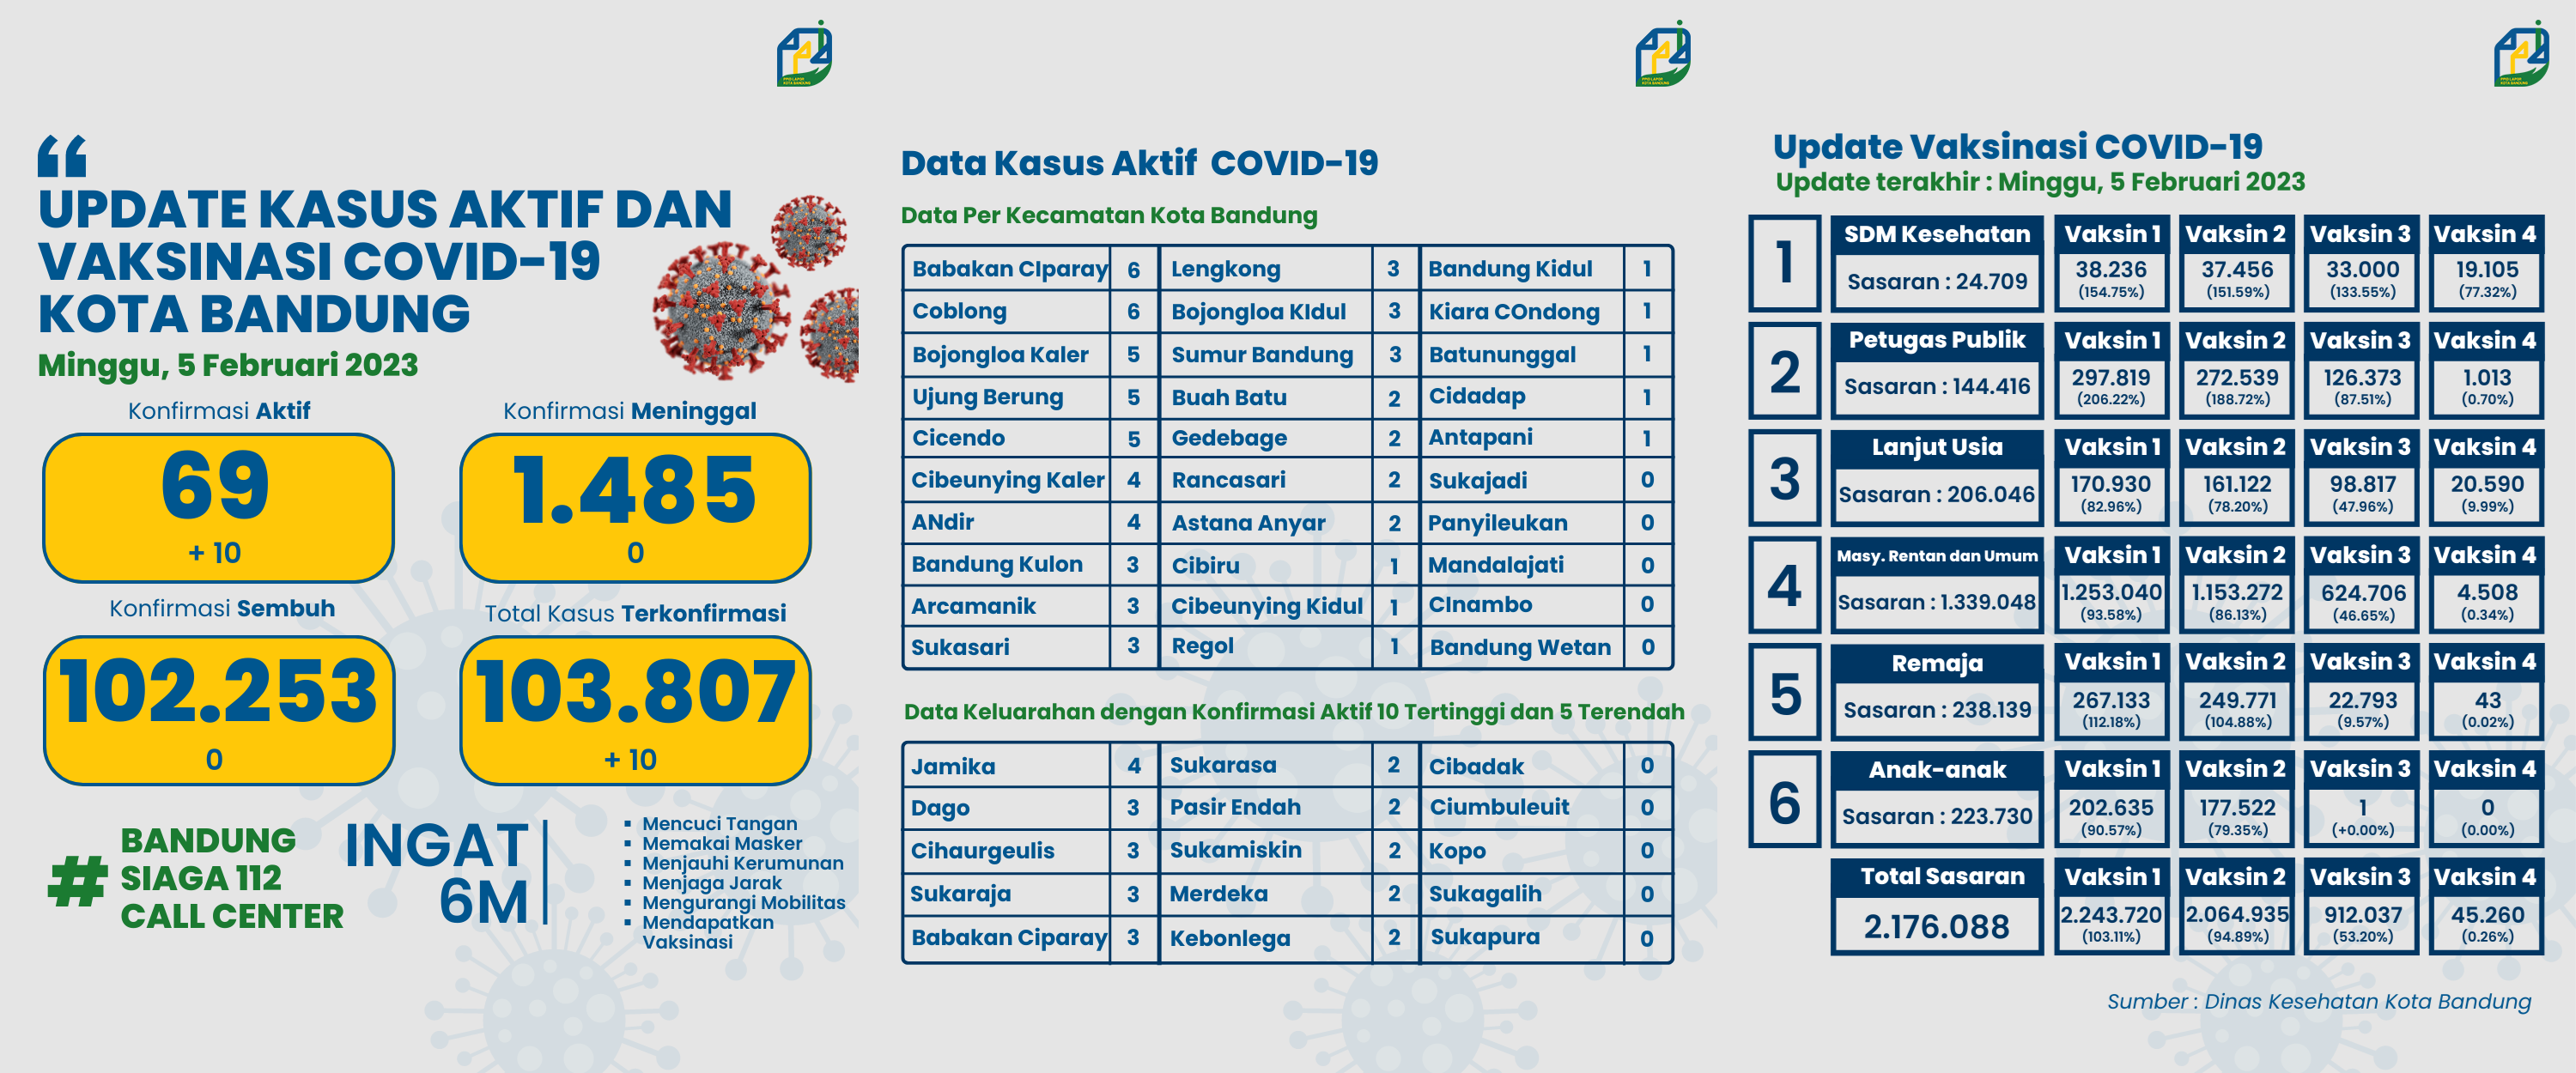 UPDATE STATISTIK COVID-19 DI KOTA BANDUNG PER TANGGAL 5 FEBRUARI 2023